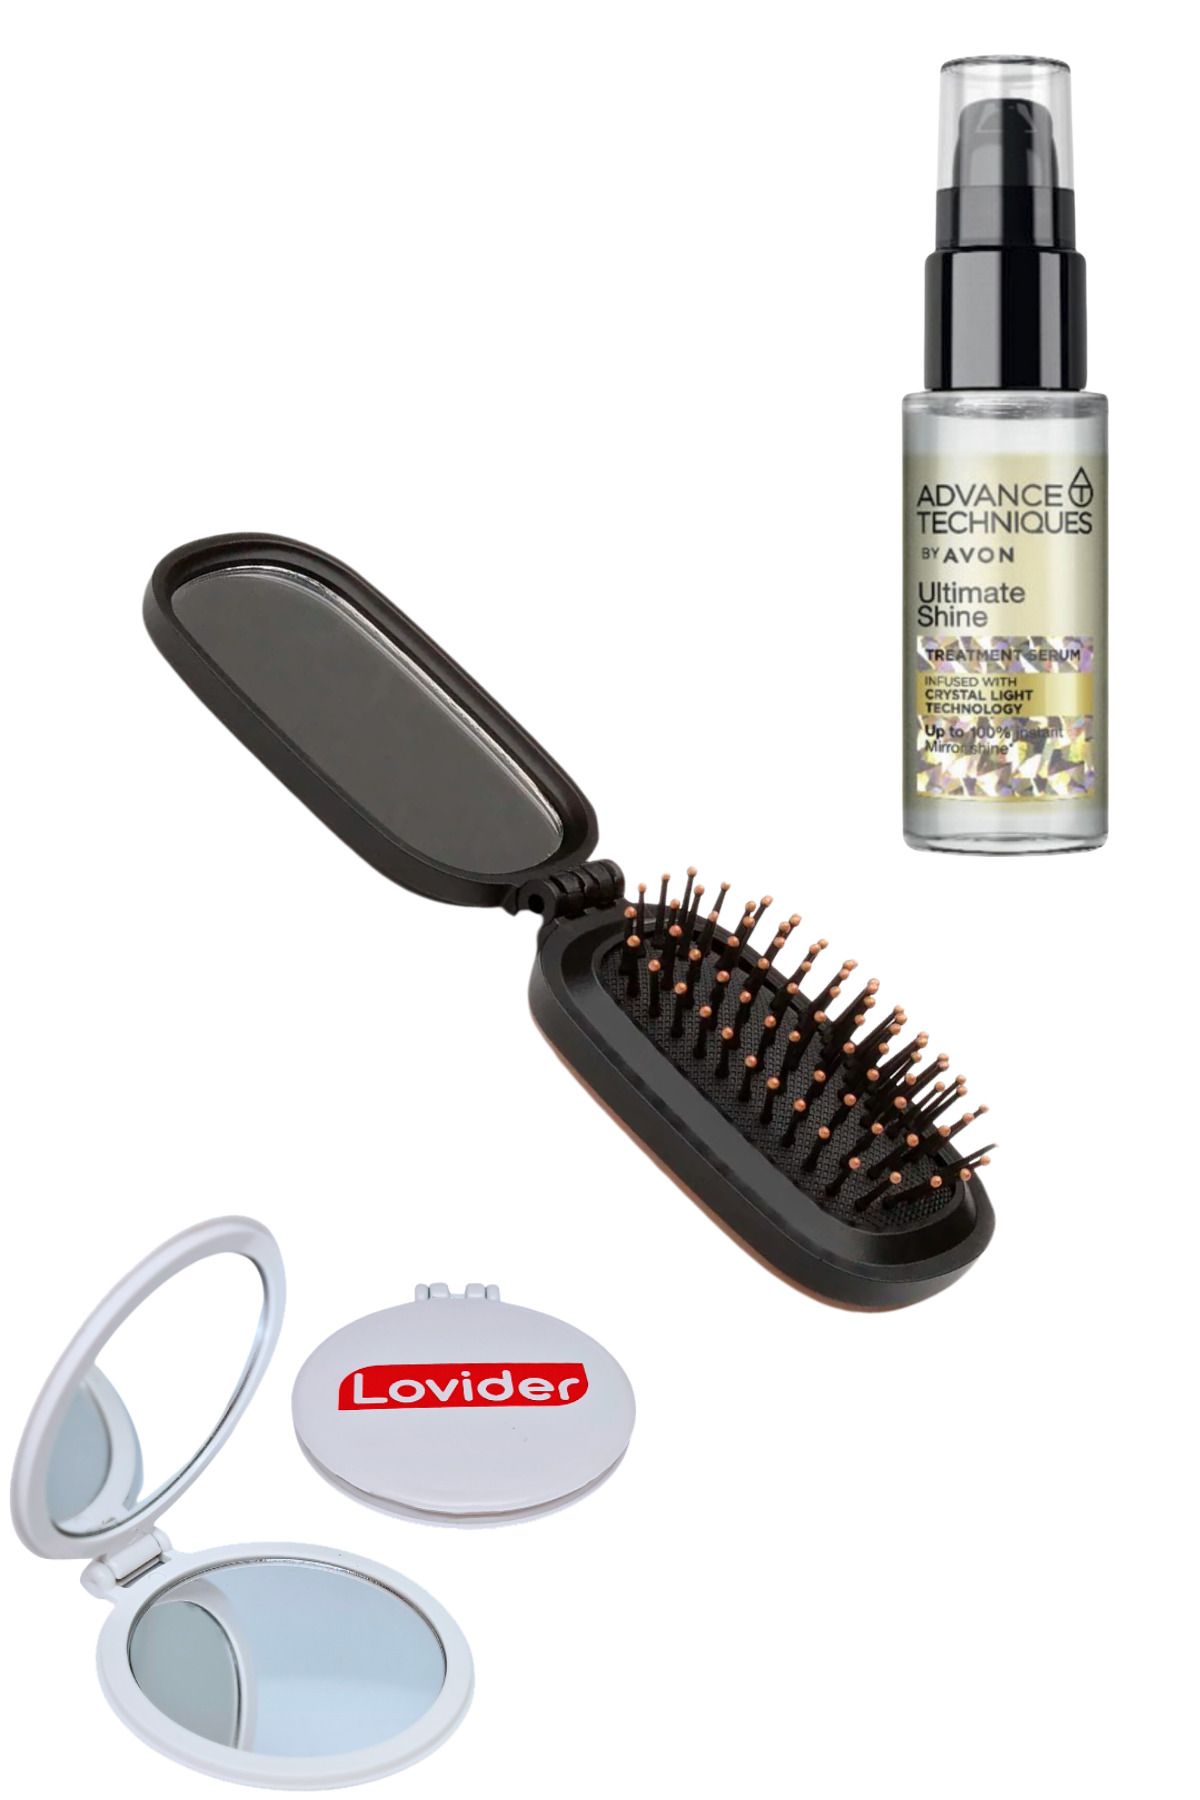 Avon Katlanabilir Aynalı Saç Fırçası + Parlaklık Veren Saç Serumu 30ml + Lovider Cep Aynası